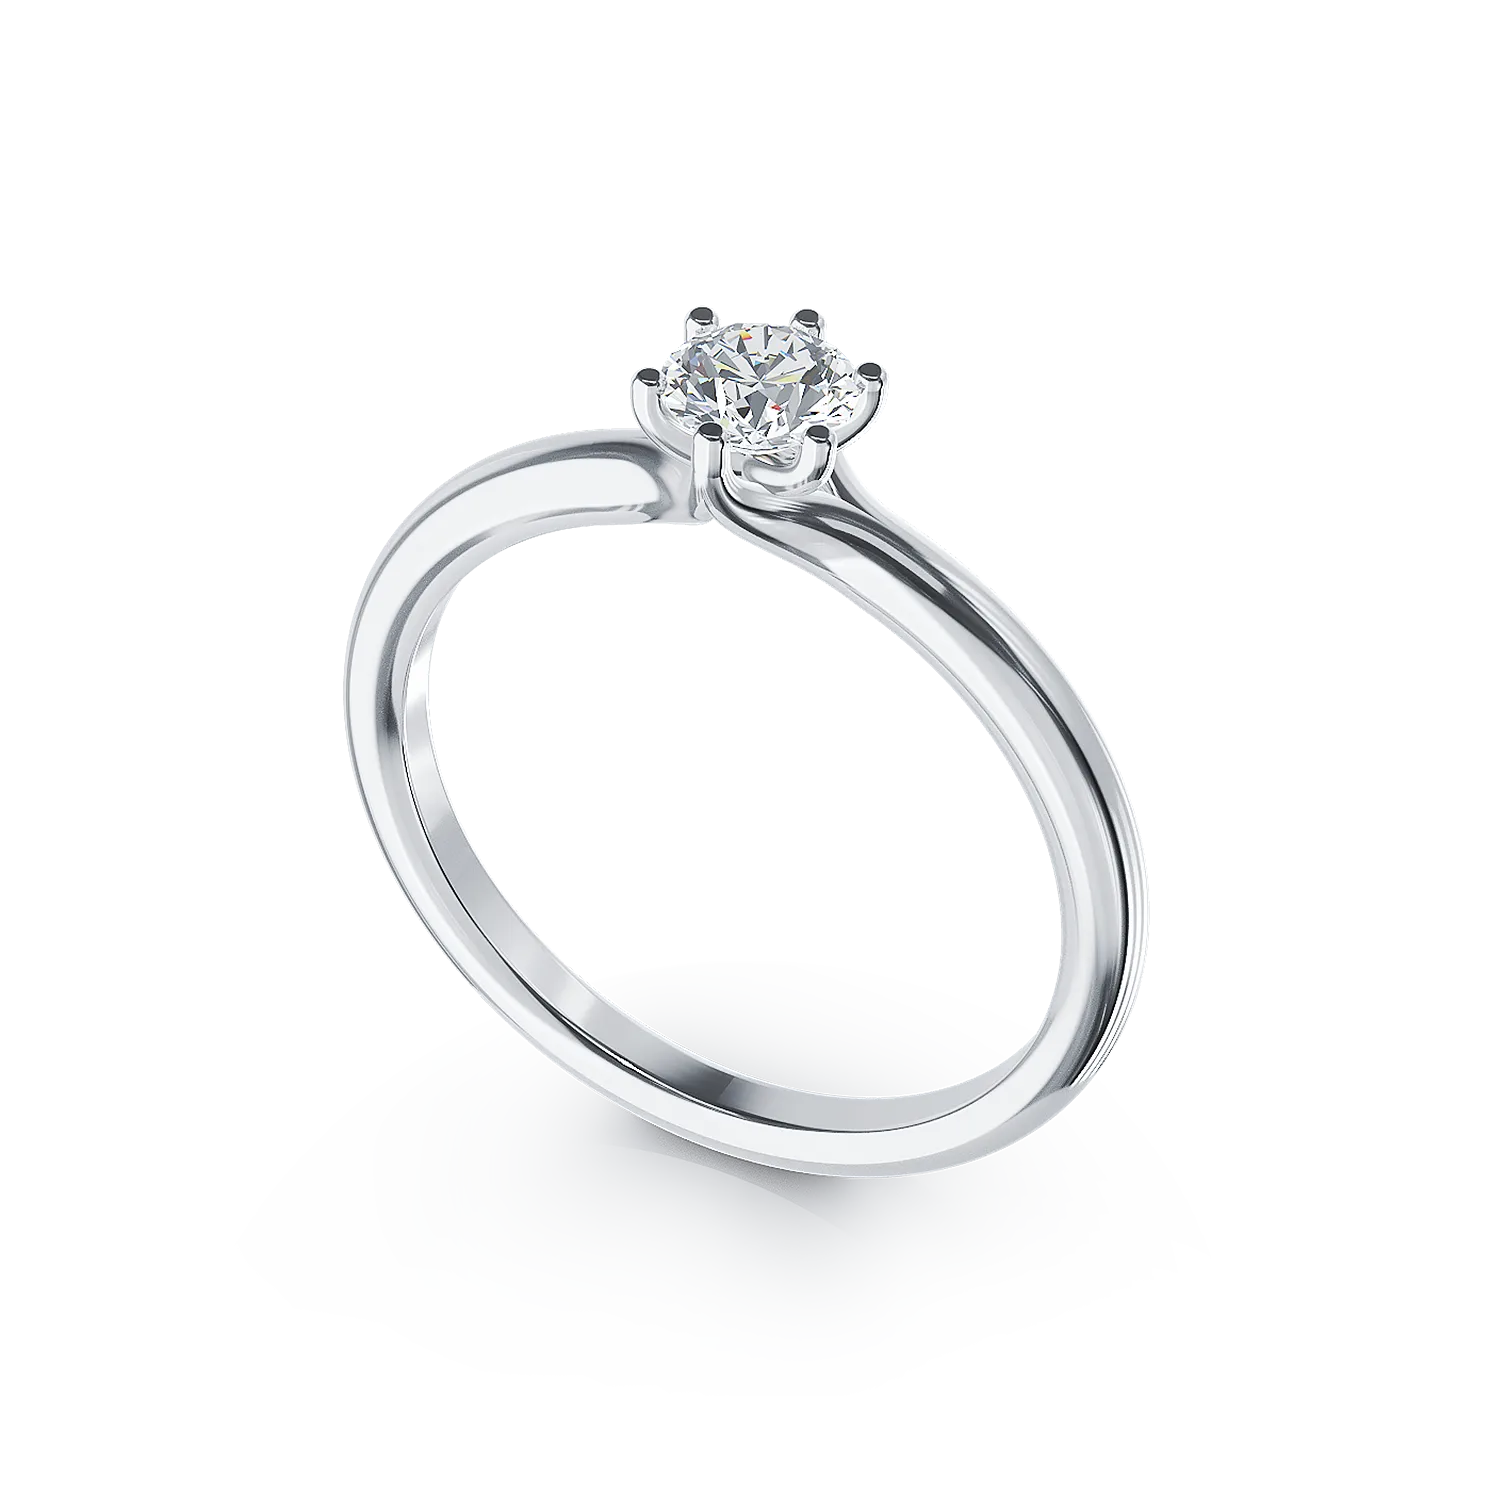 Eljegyzési gyűrű 18K-os fehér aranyból 0,3ct gyémánttal. Gramm: 2,35